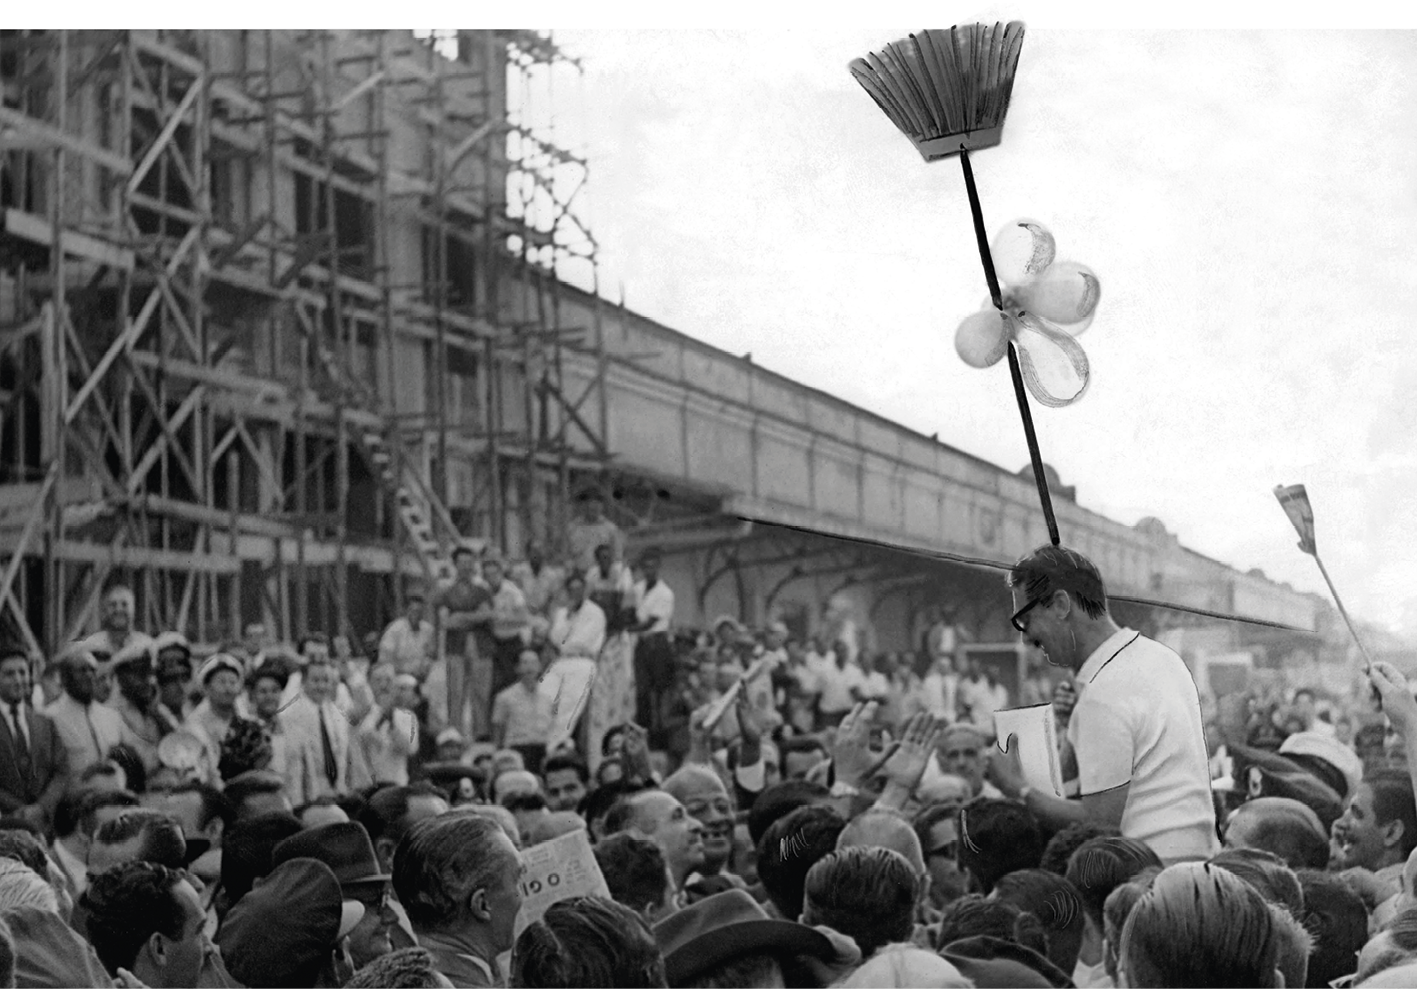 Fotografia em preto e branco. Jânio Quadros sendo carregado, no meio da multidão. Ao fundo, duas vassouras levantadas para o alto.